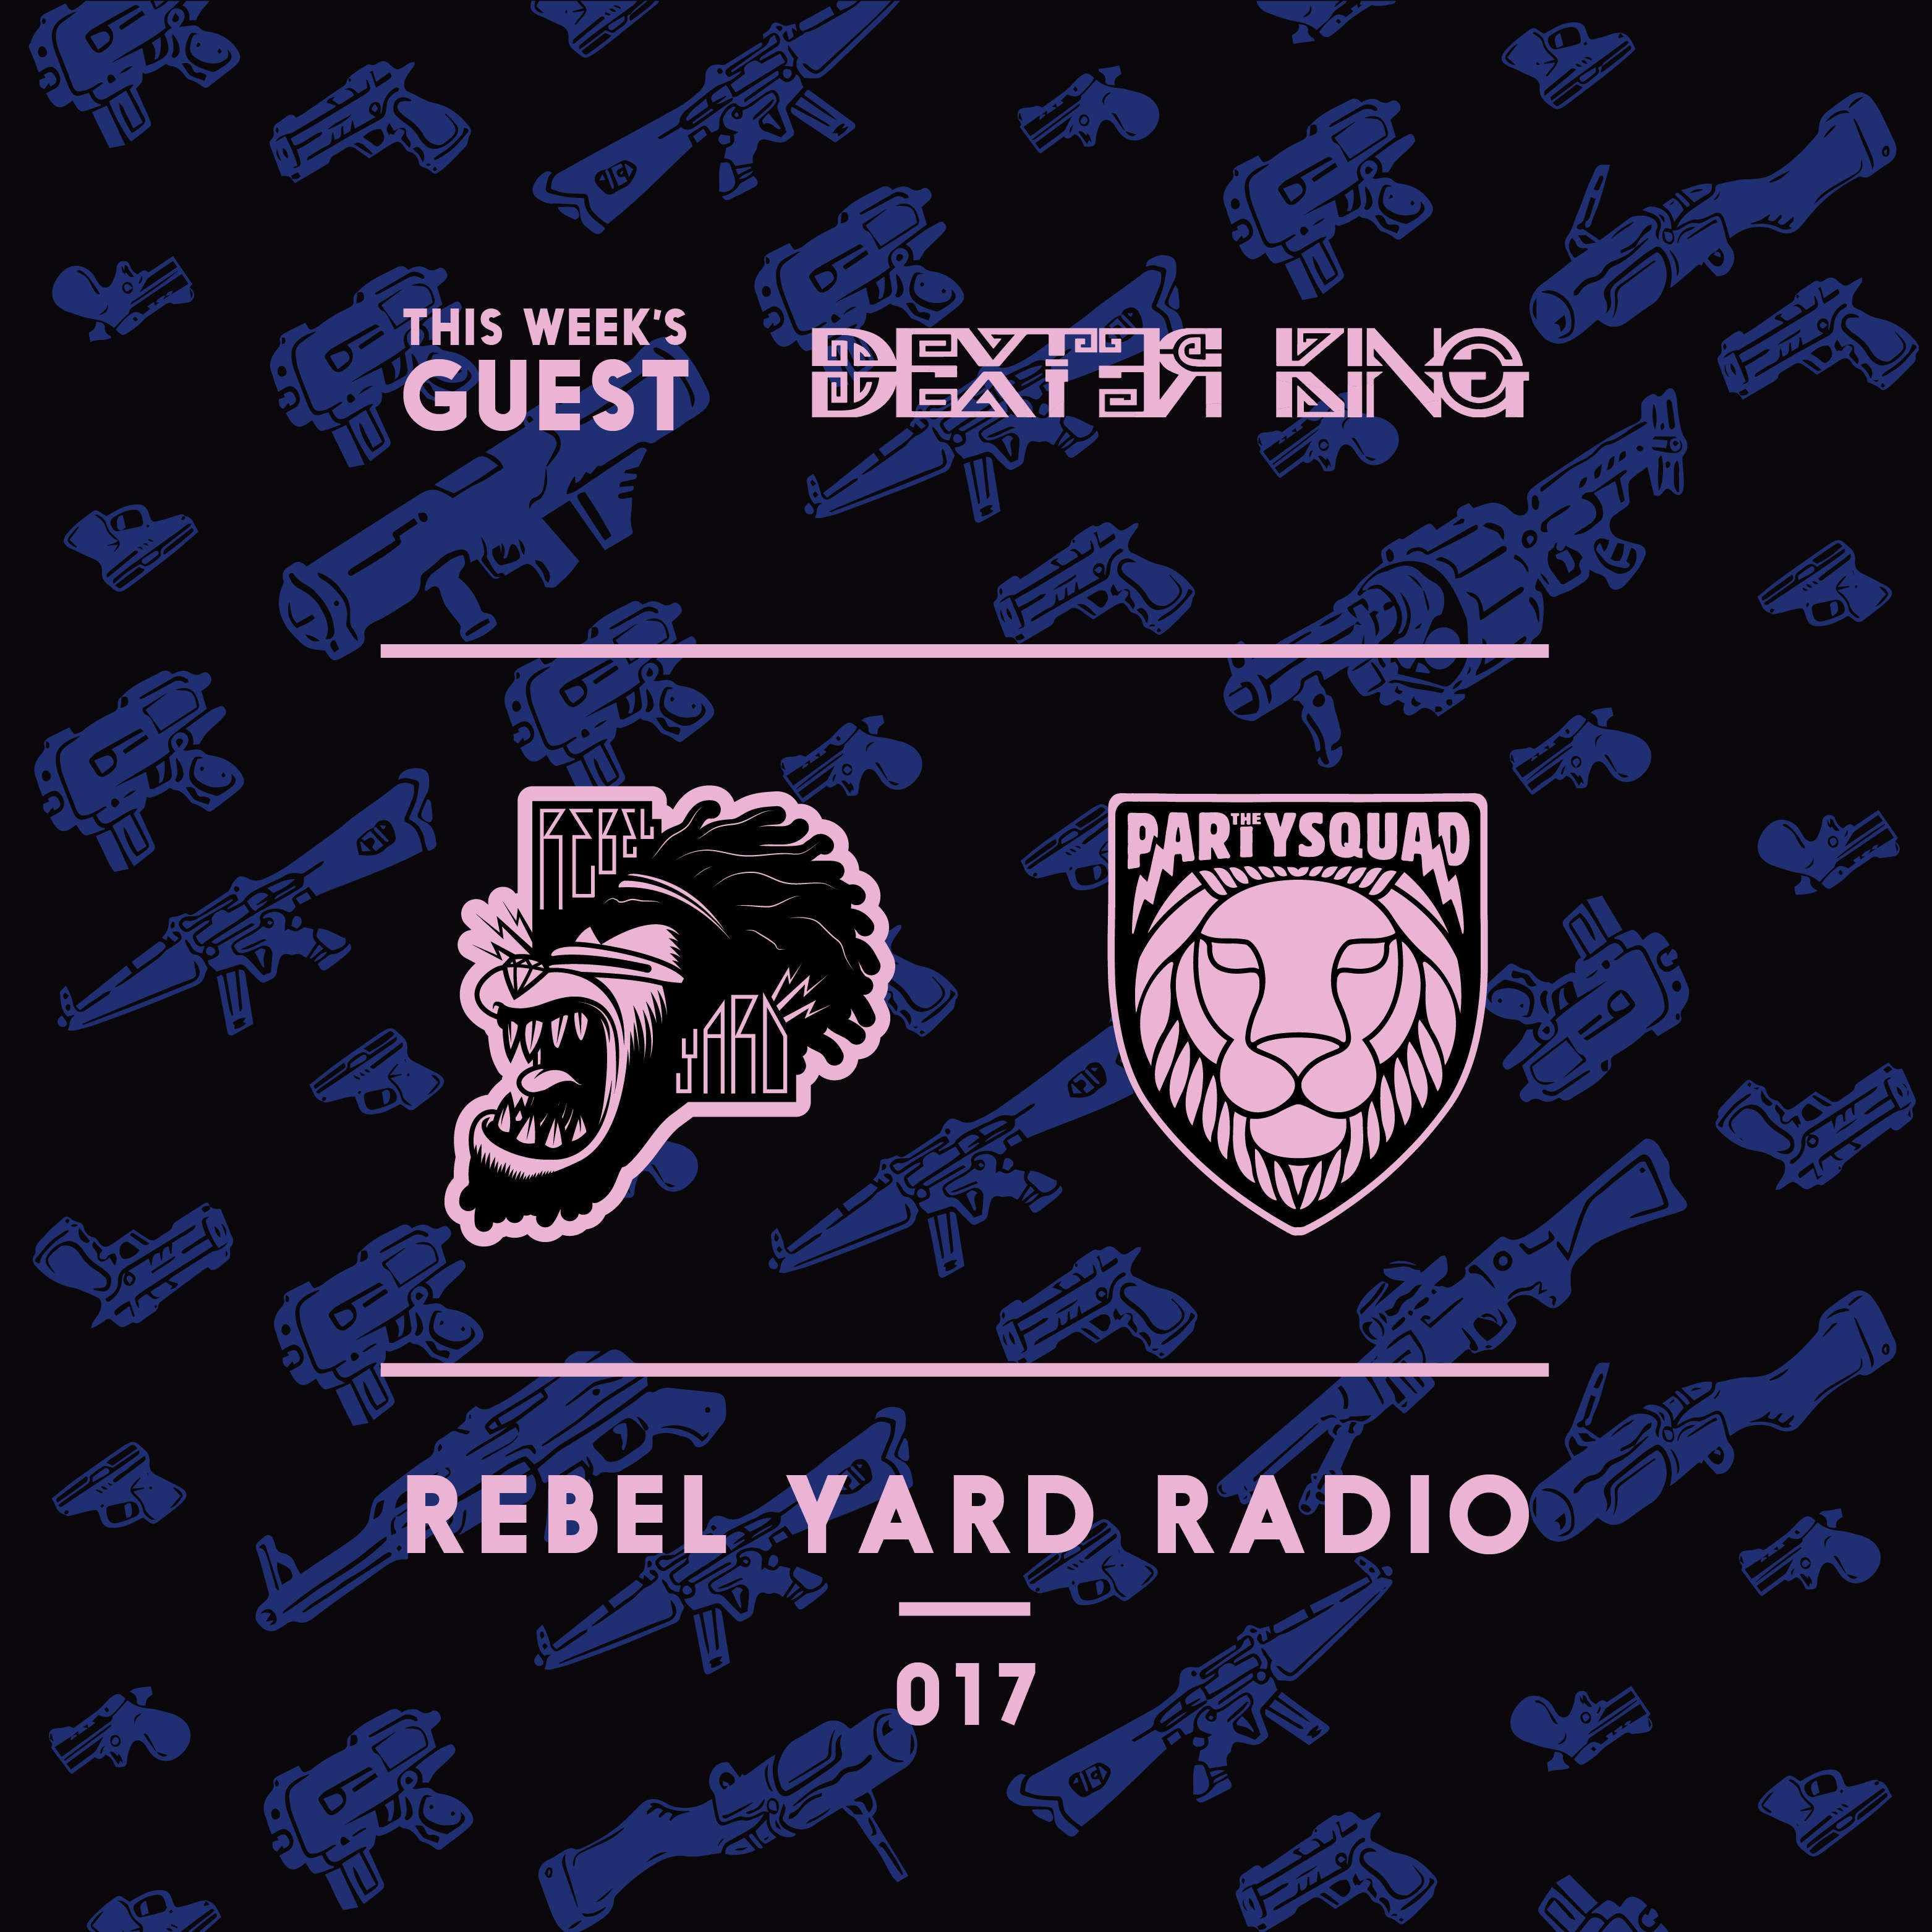 REBEL YARD RADIO 017 DEXTER KING